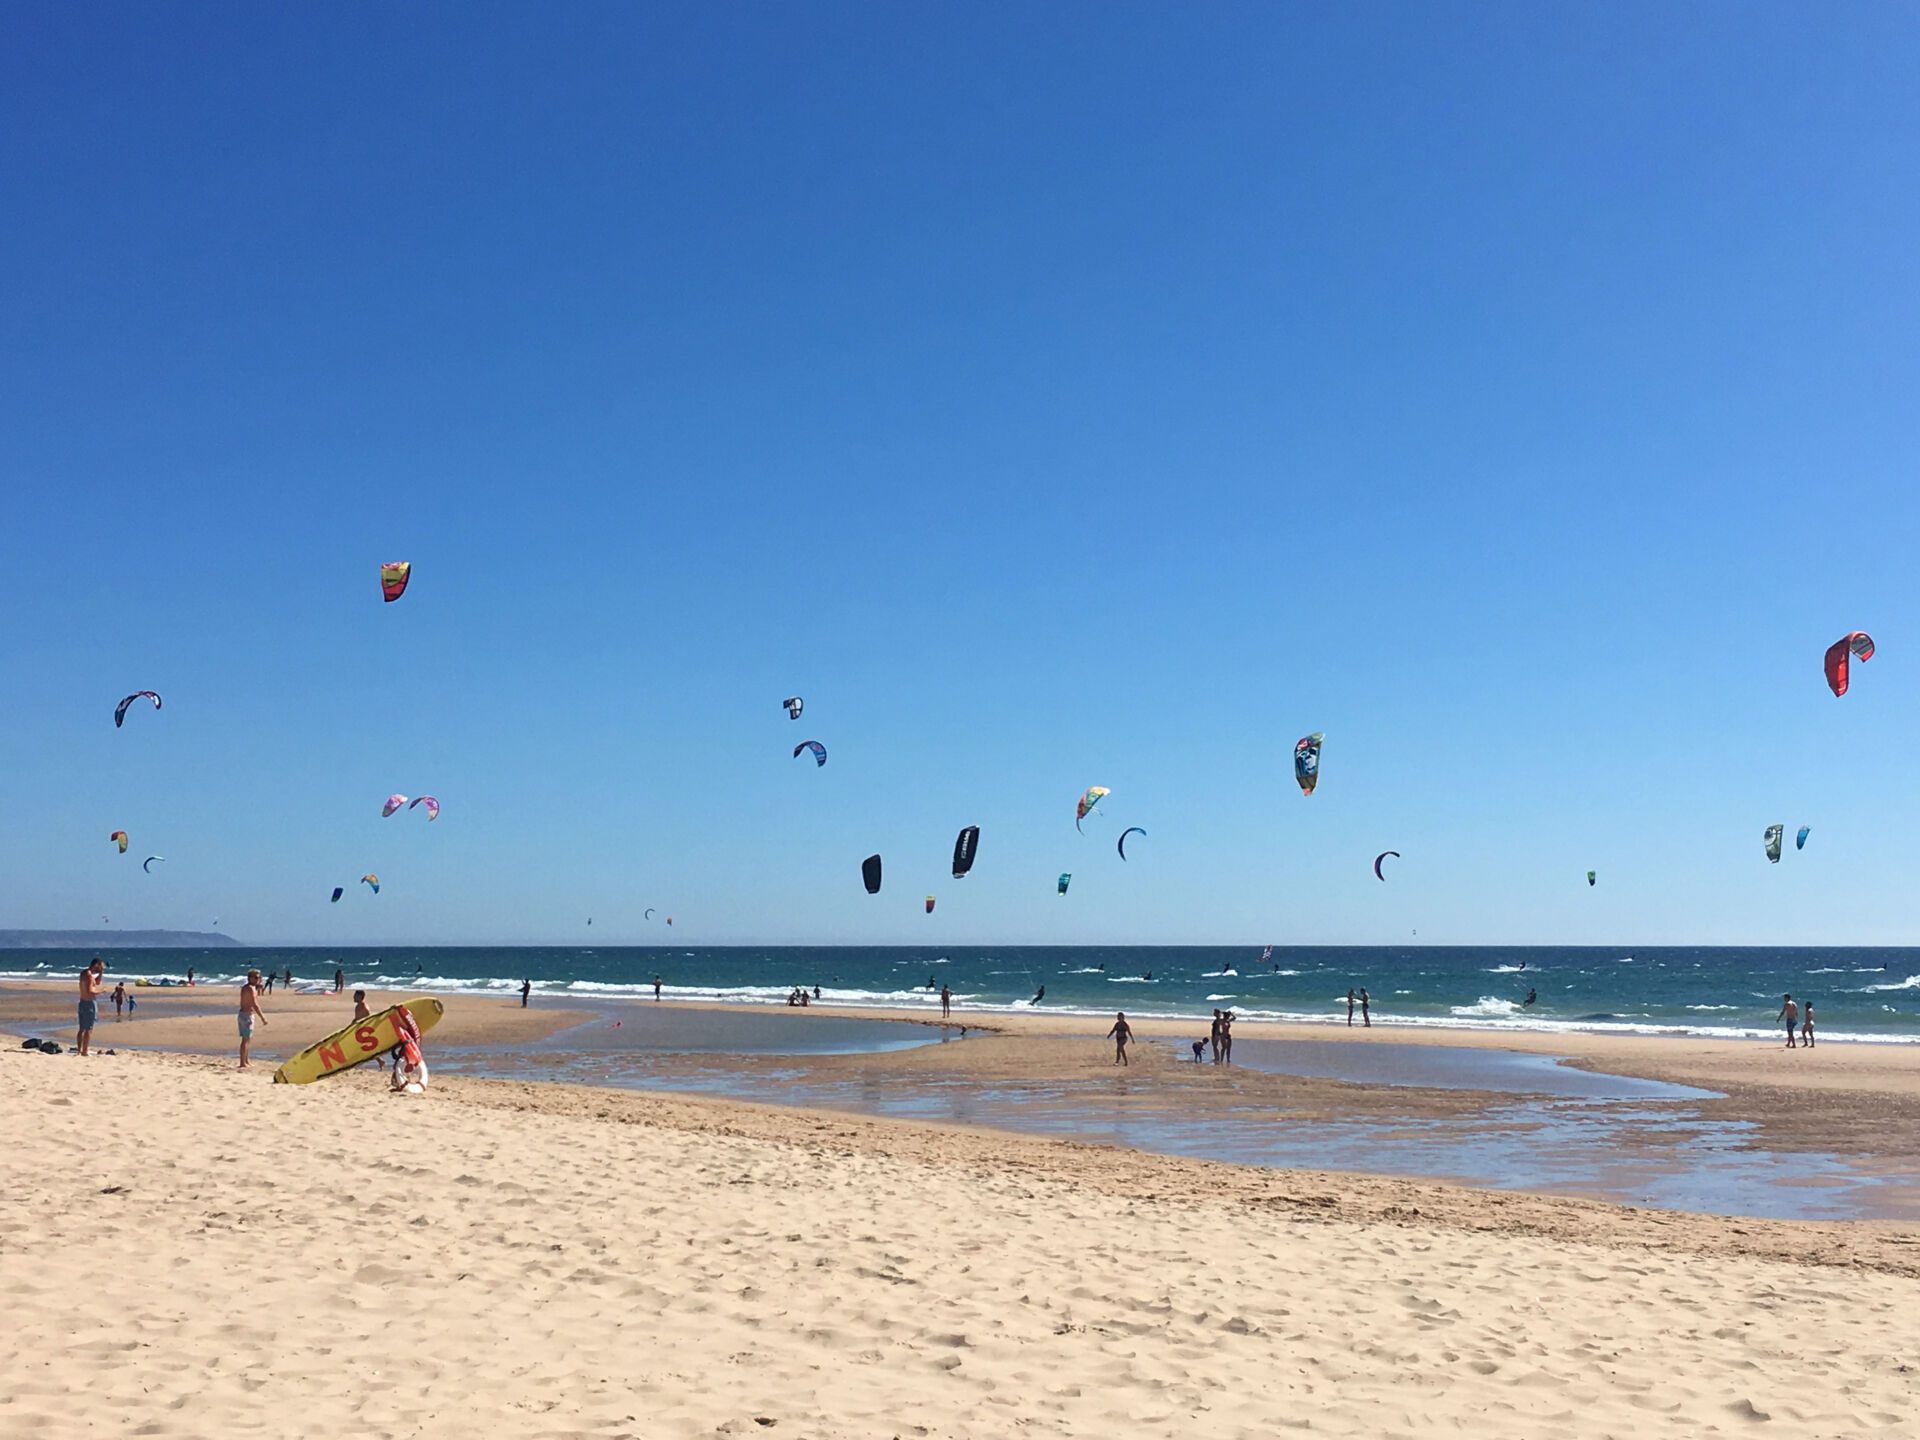 Kite surfers delight at Nova Vaga